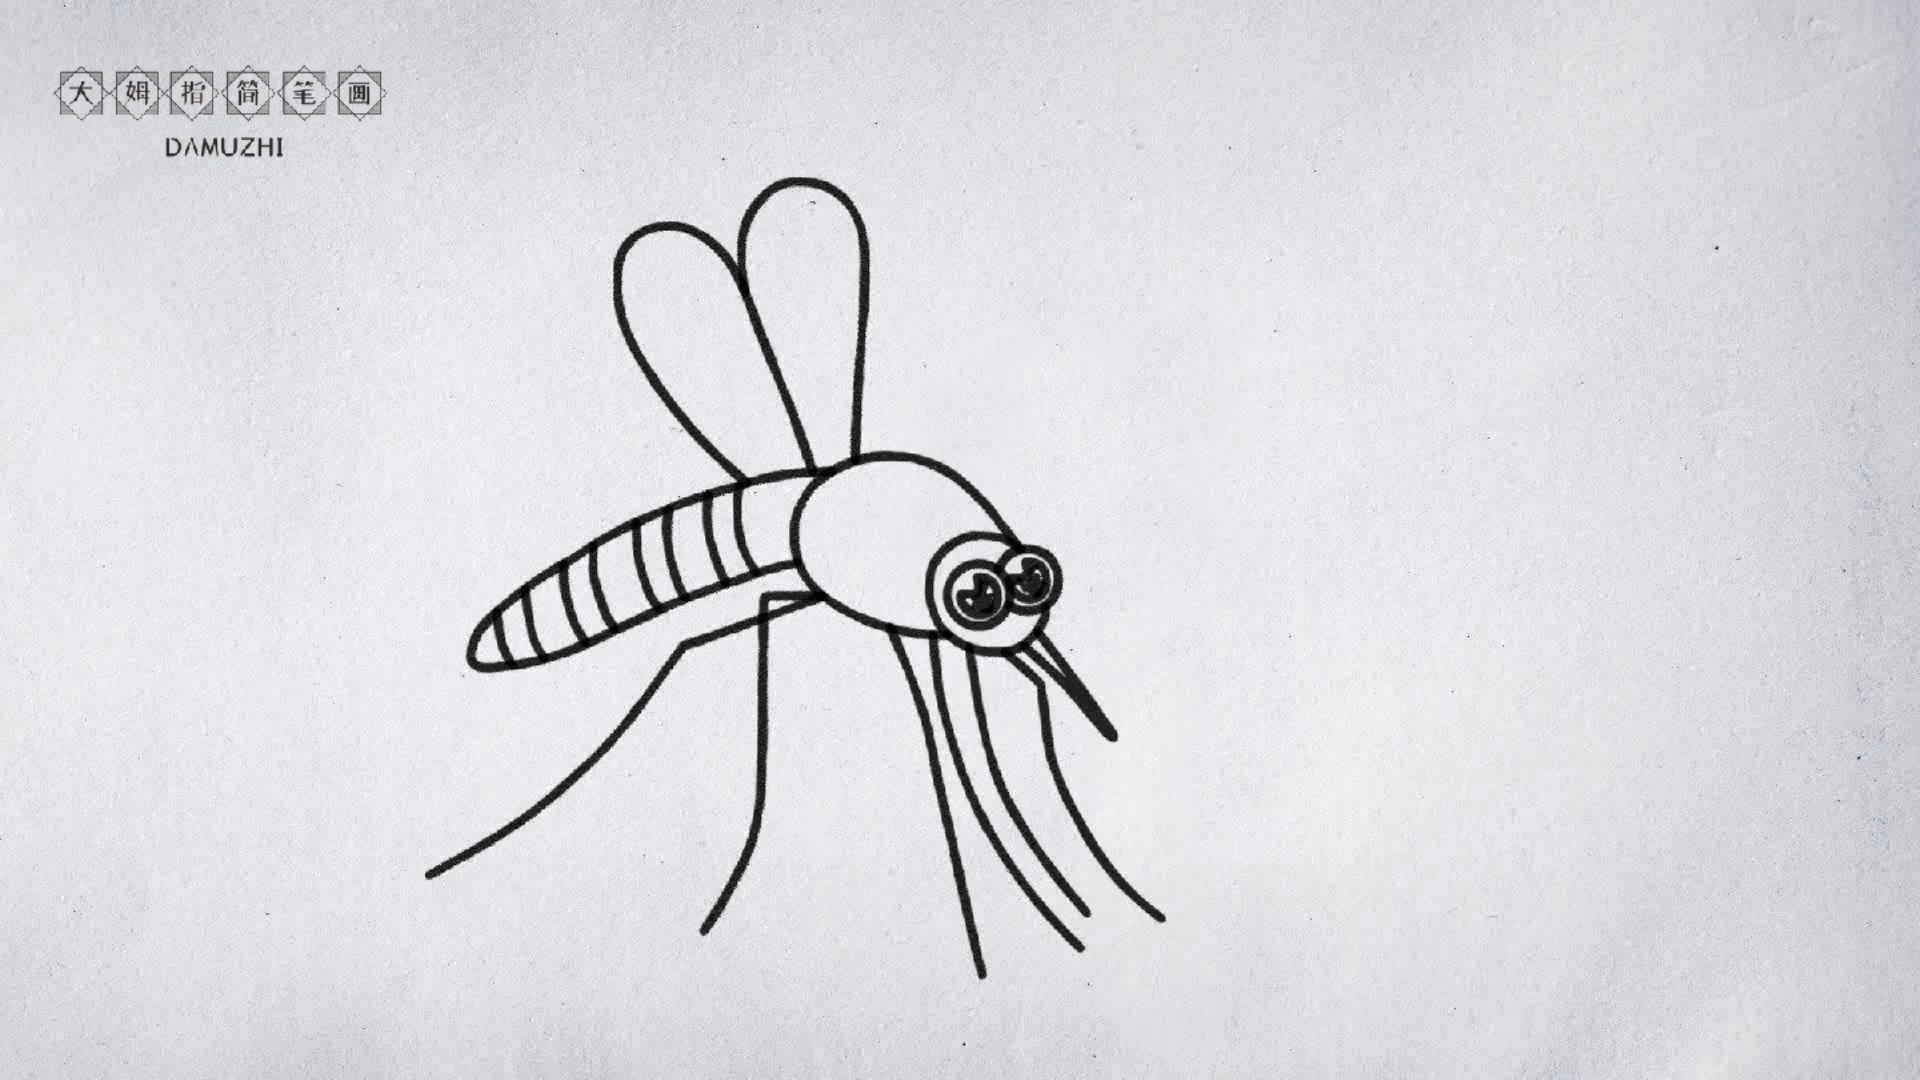 很真的蚊子画法图片